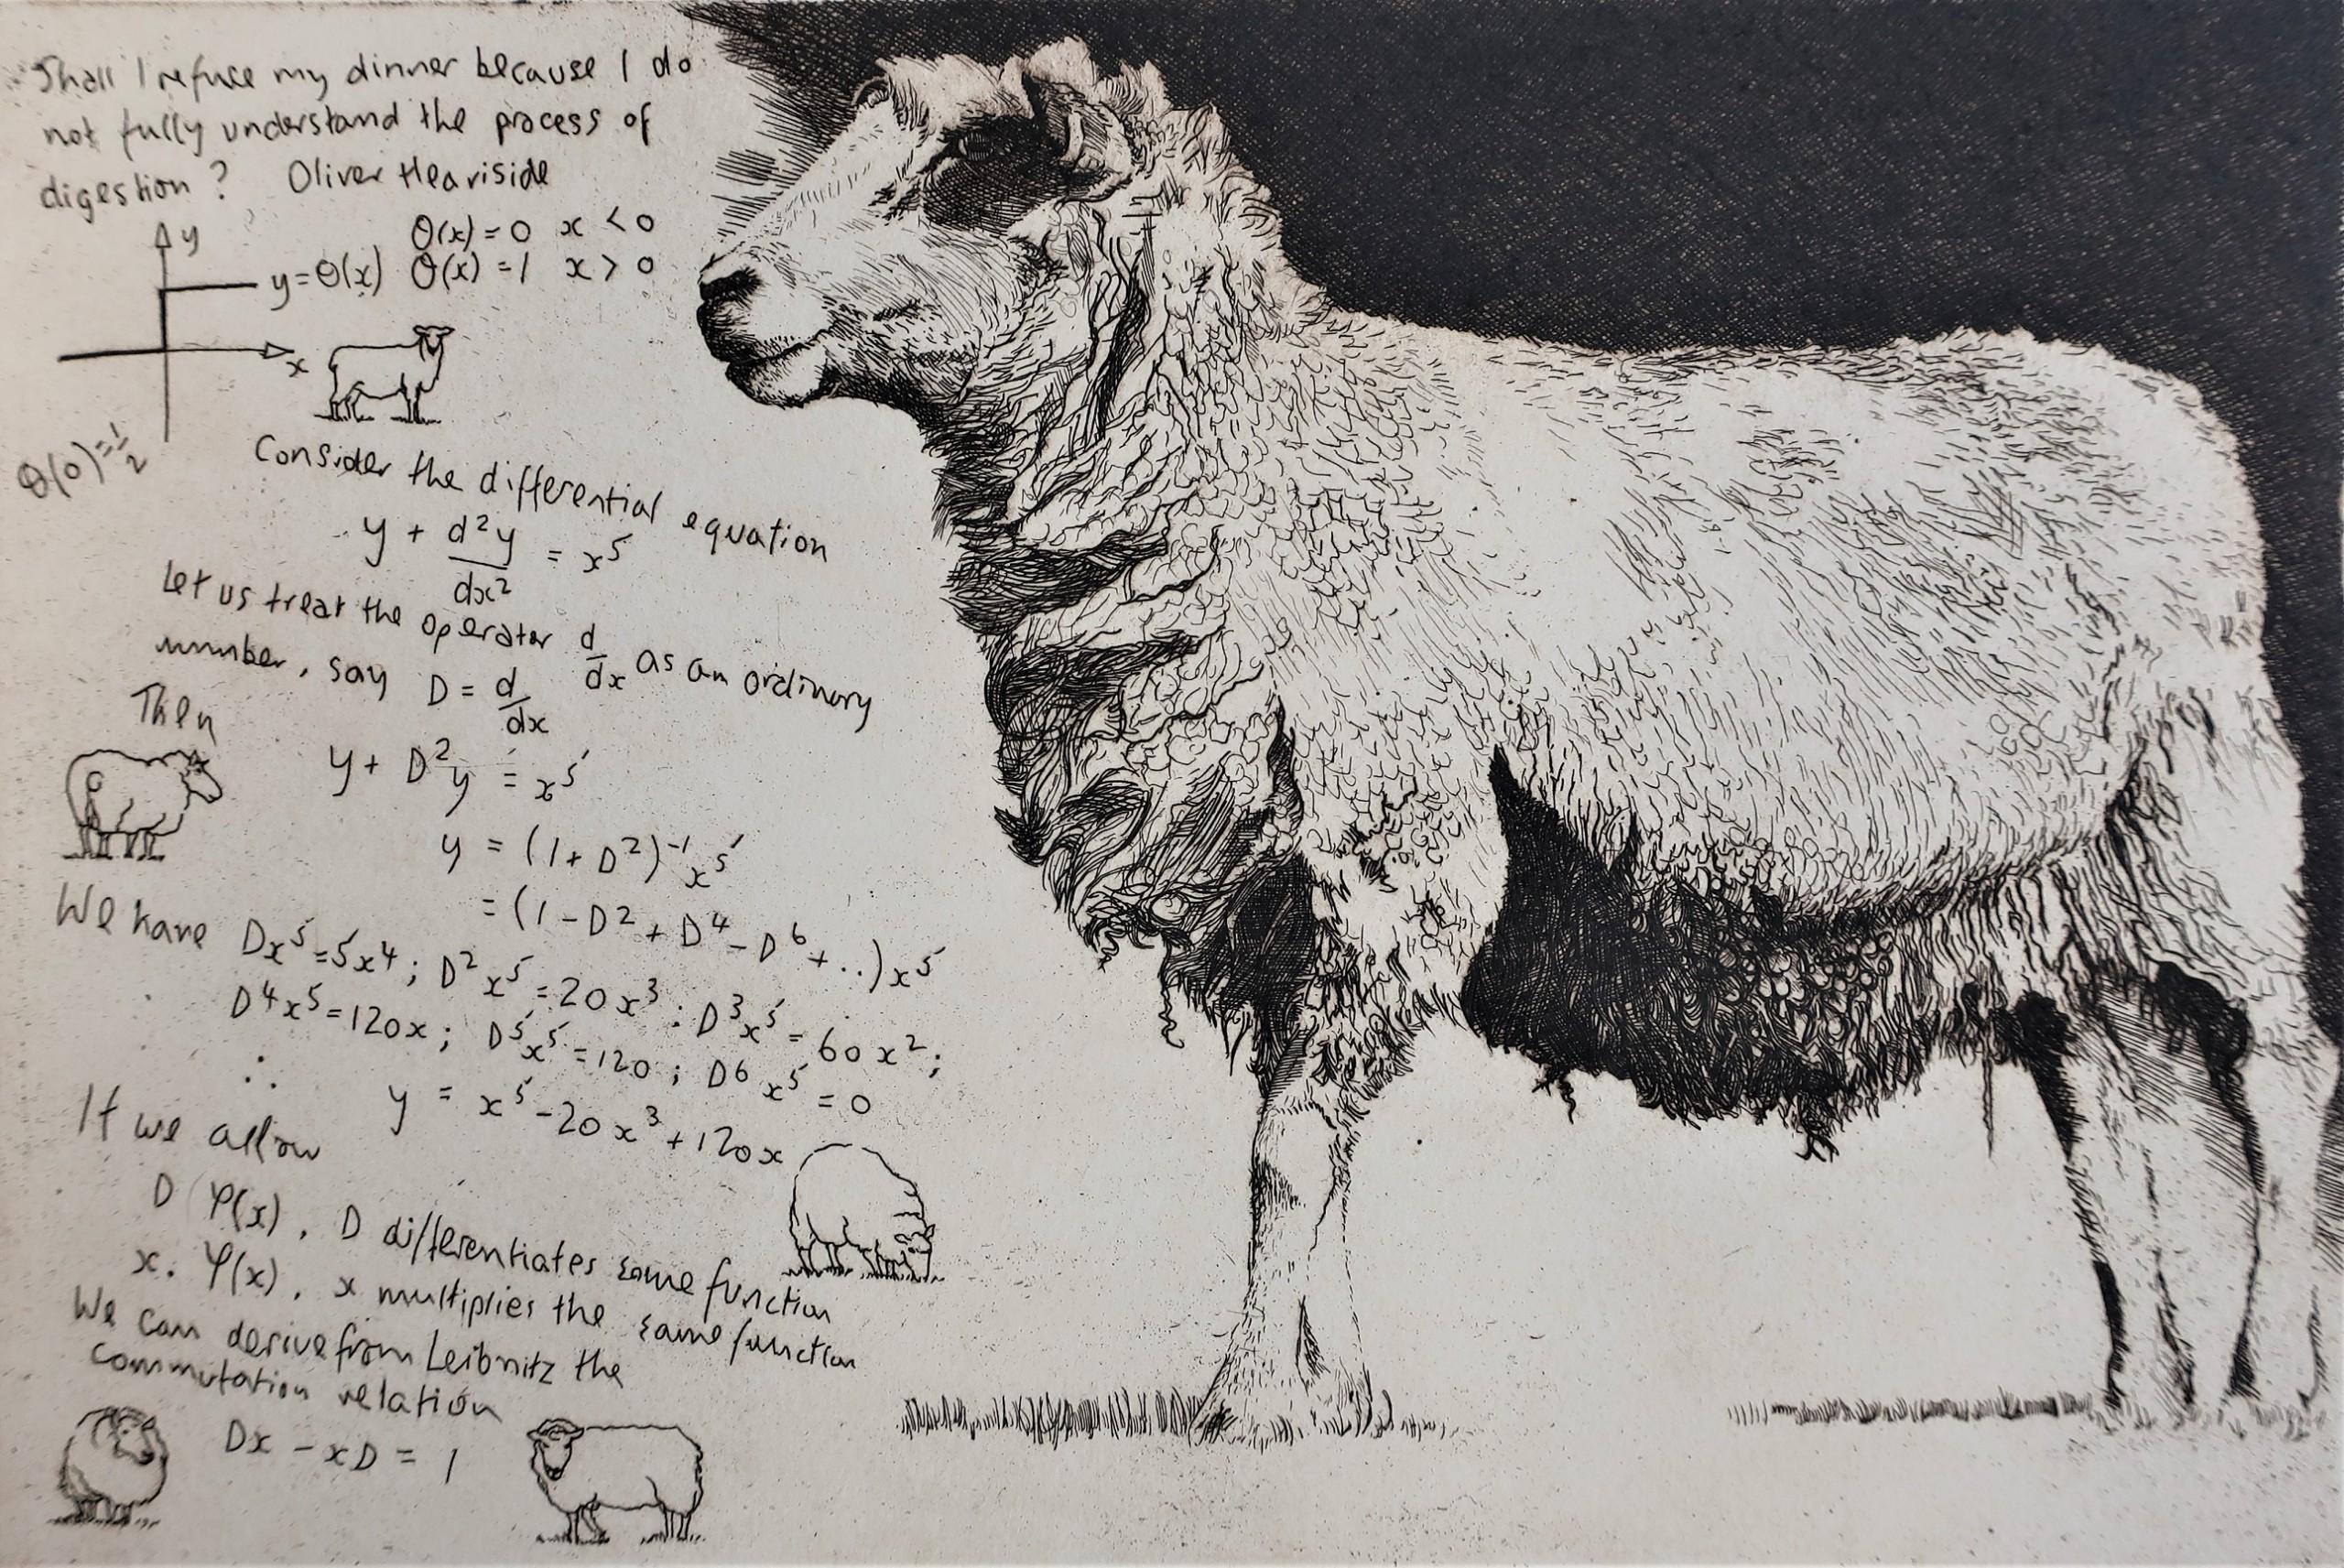 Heaviside Sheep est une gravure originale de Will Taylor. Il explore les images d'animaux et les mathématiques, notamment les travaux d'Oliver Heaviside. Chaque impression porte au verso le cachet de l'atelier de l'artiste.

Informations